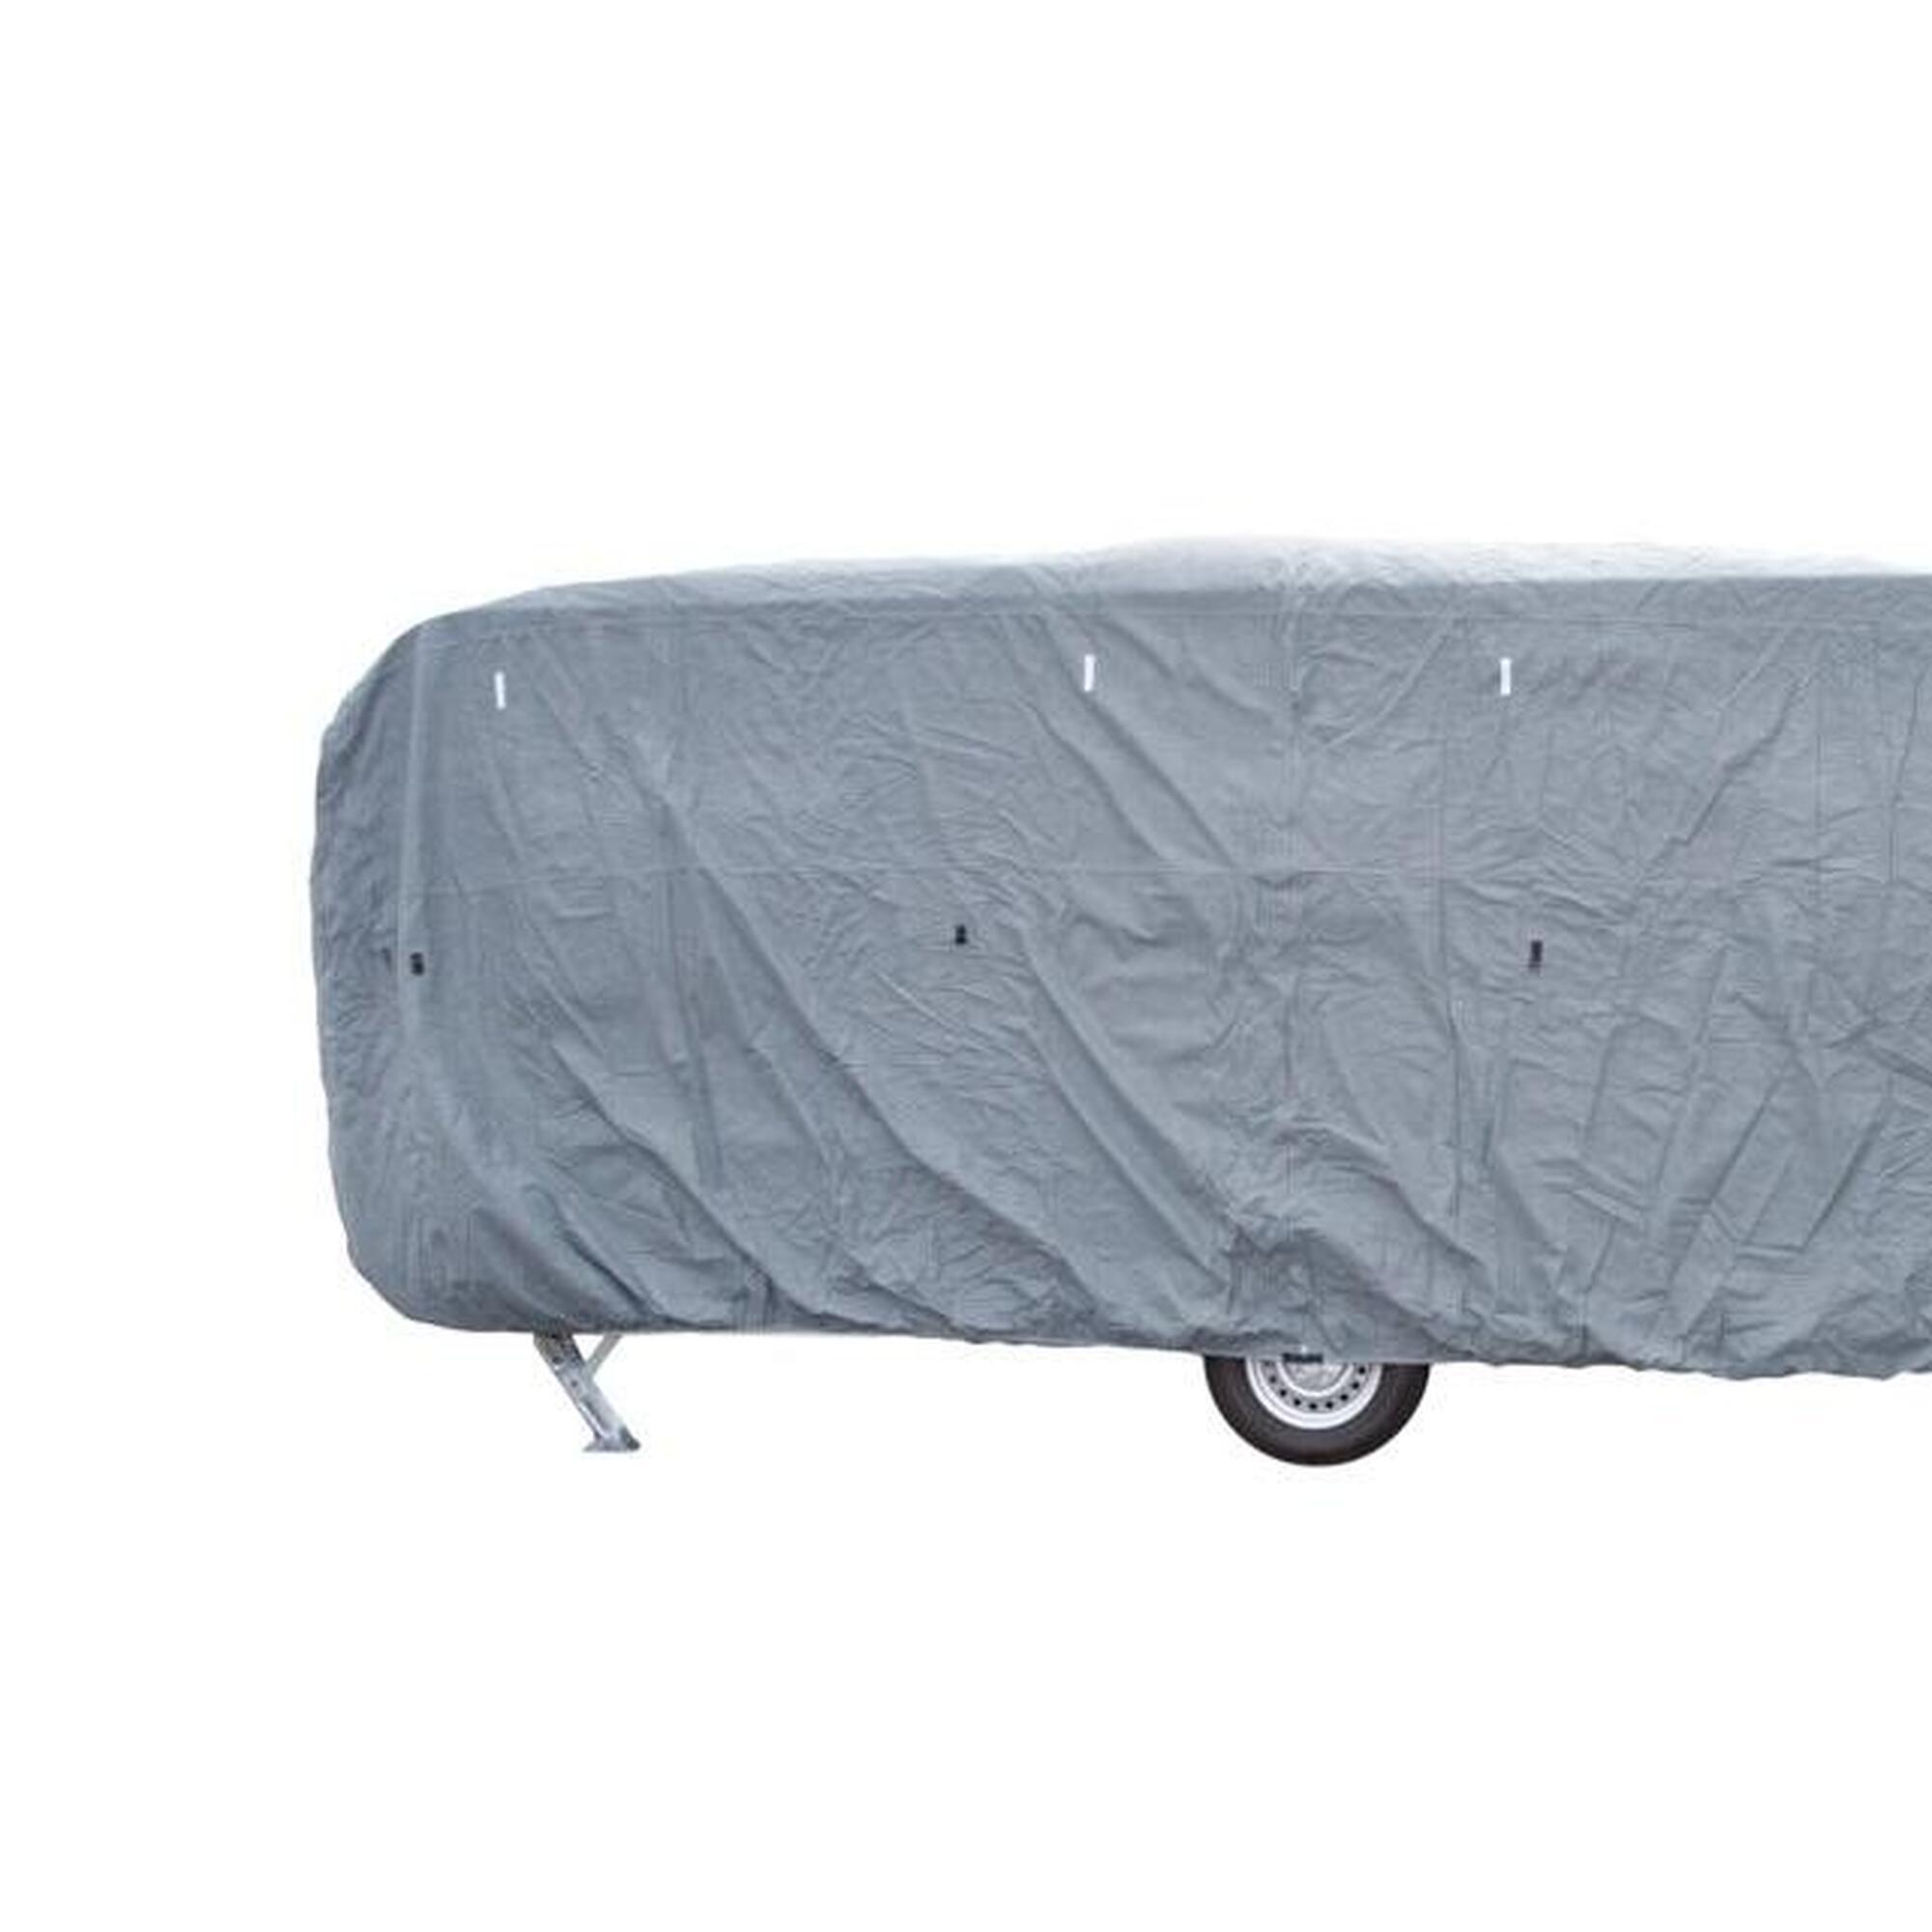 Travellife caravane couverture basic 700x250x220cm